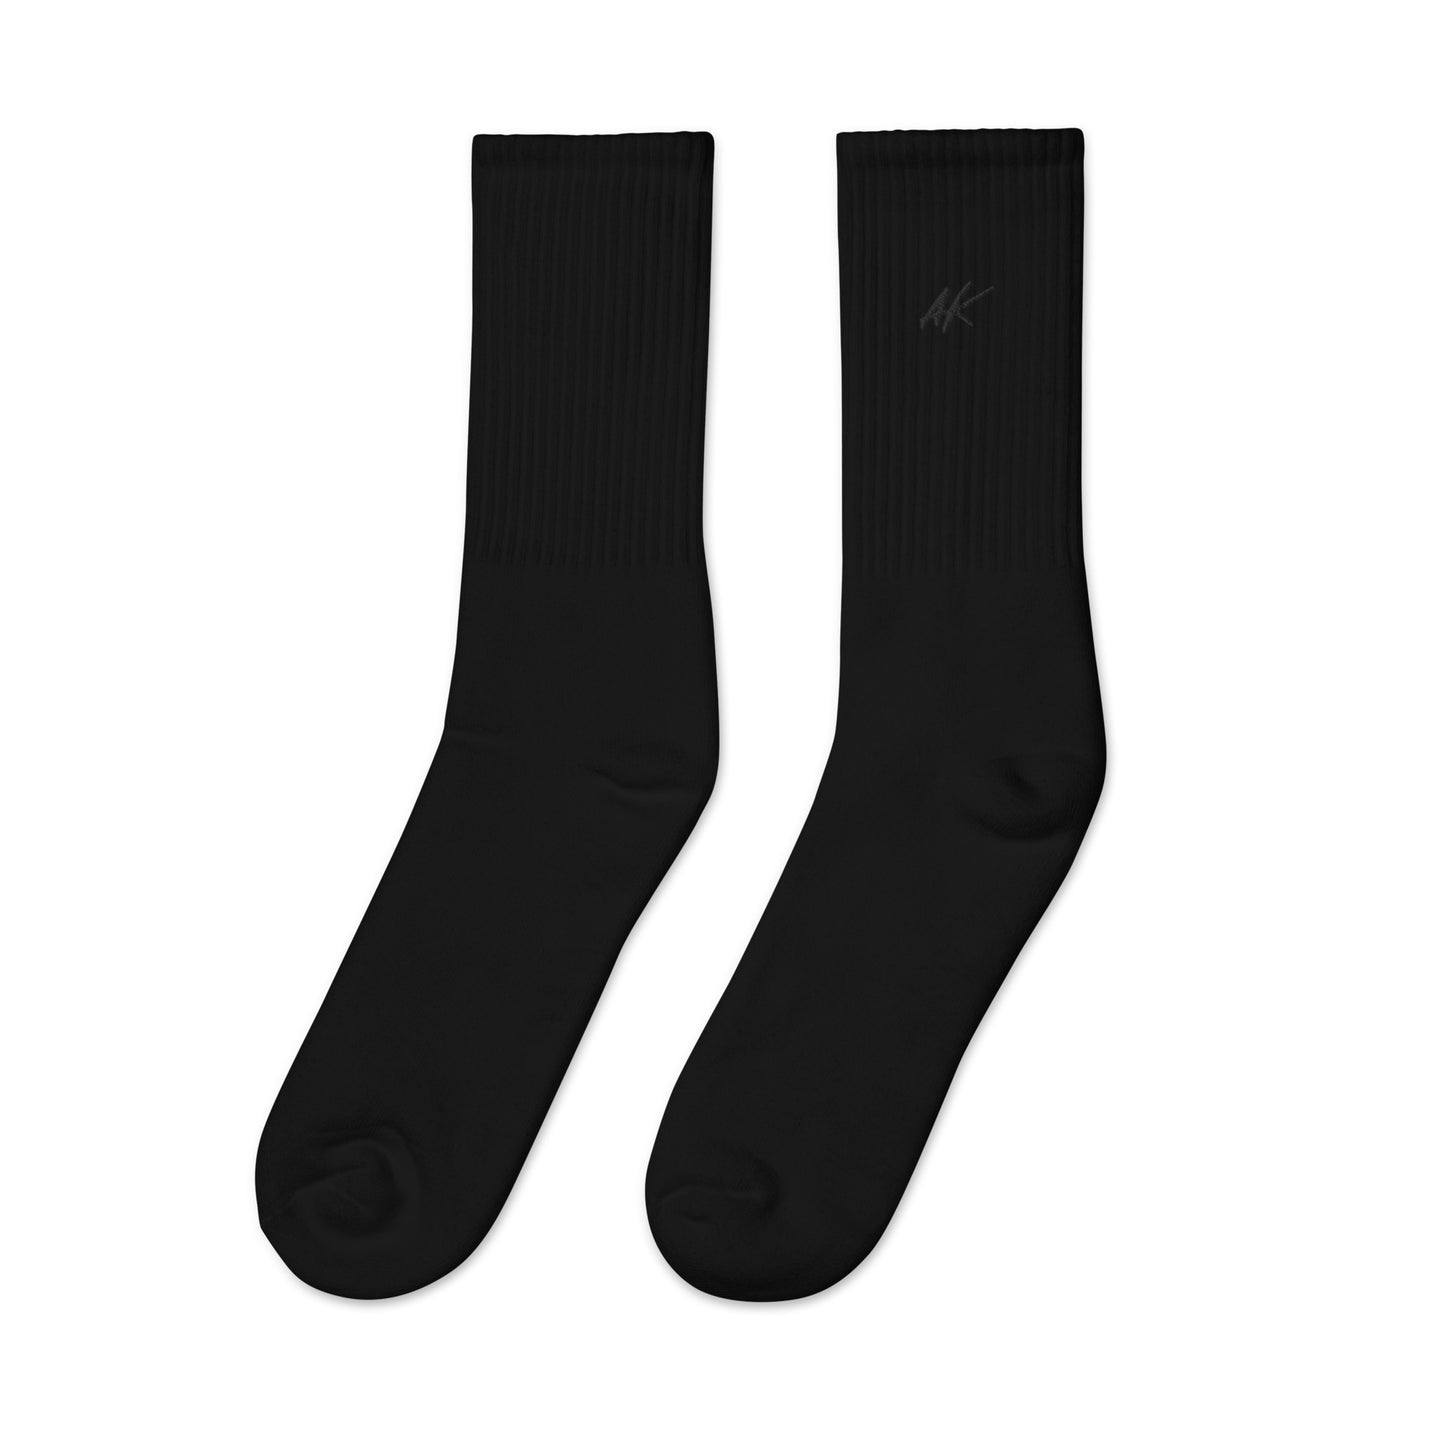 AK socks (black)